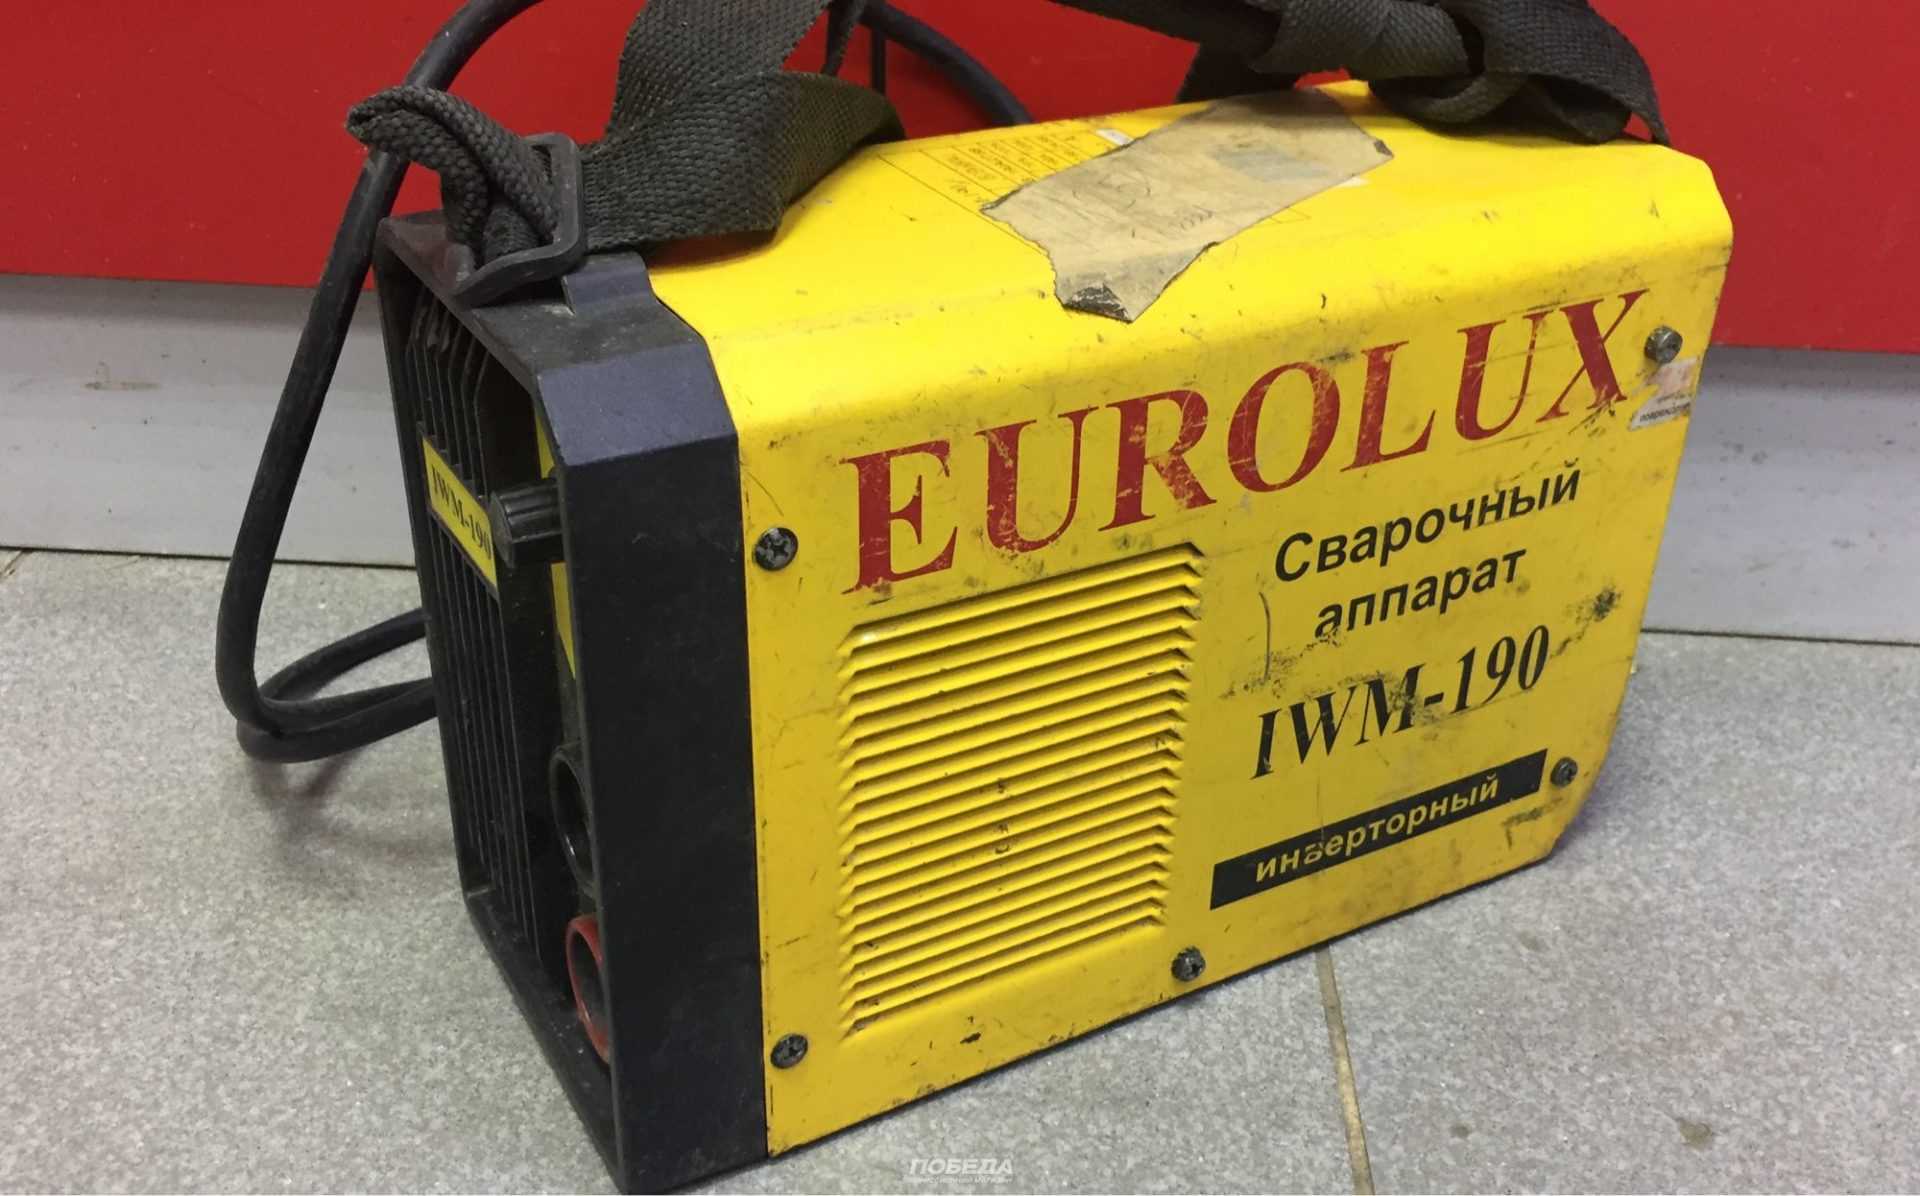 Сварочный аппарат от бренда евролюкс (eurolux): стоит ли покупать?